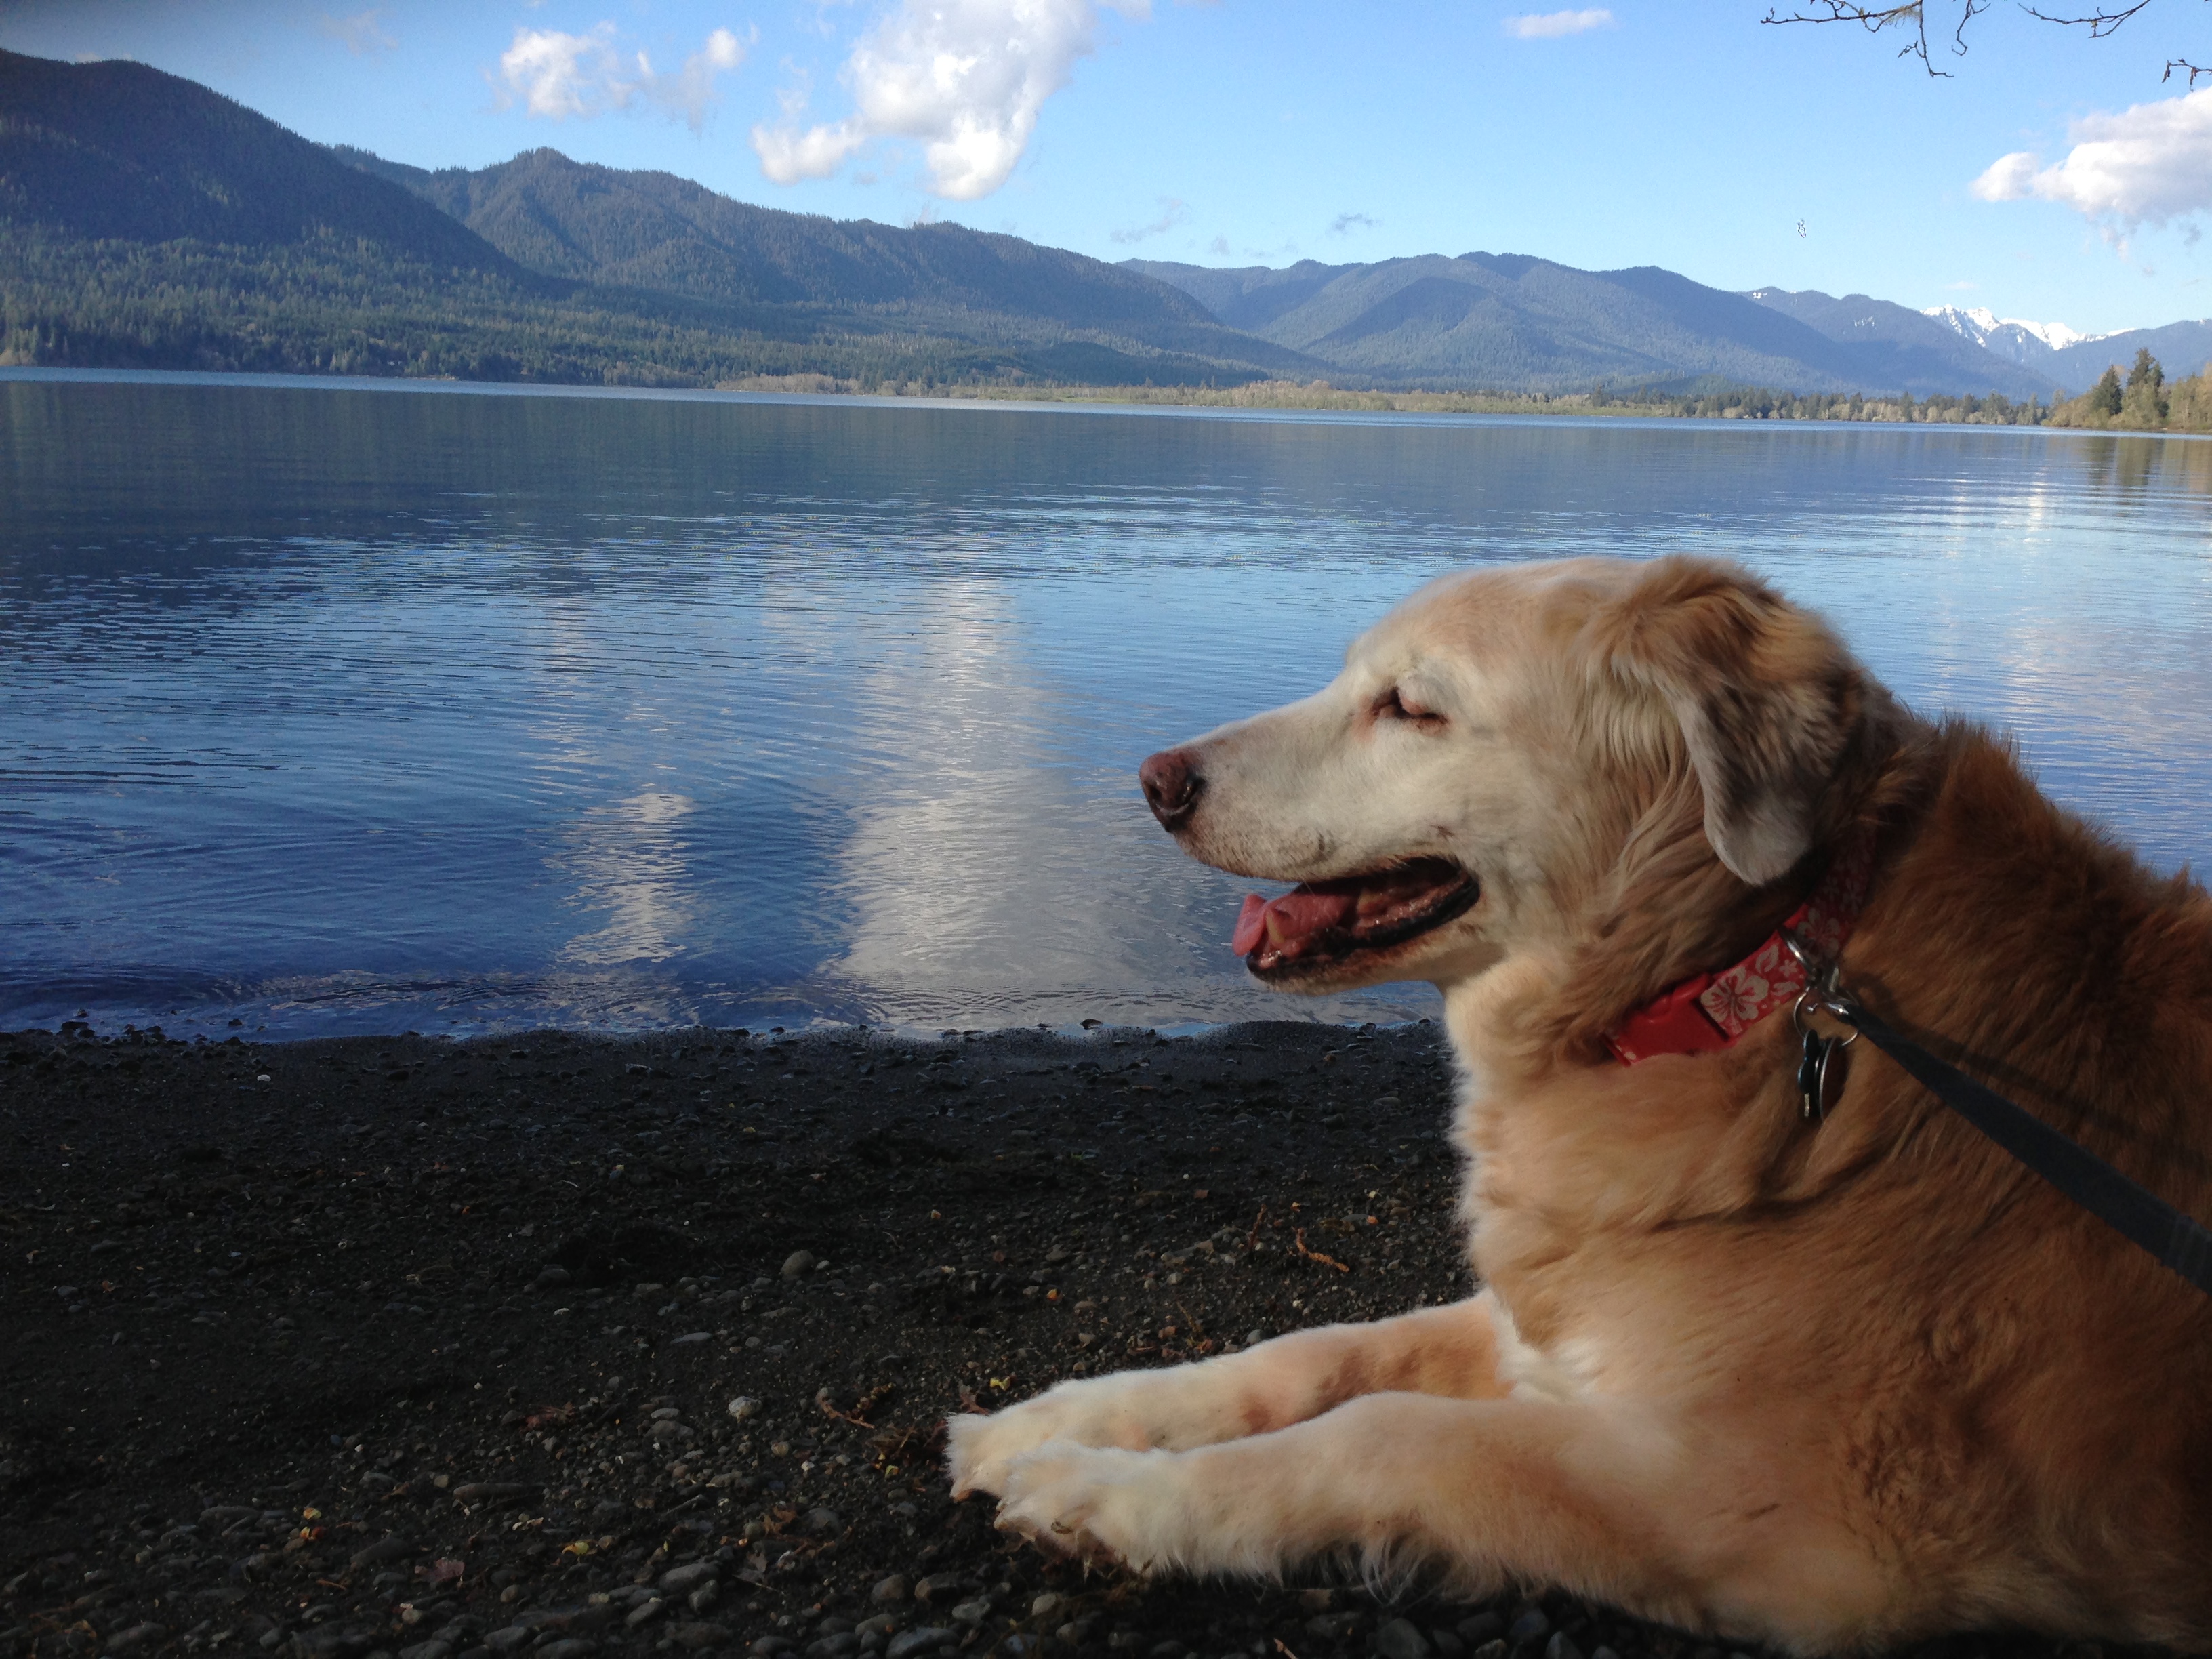 Dinah reflecting at Lake Quinalt, WA